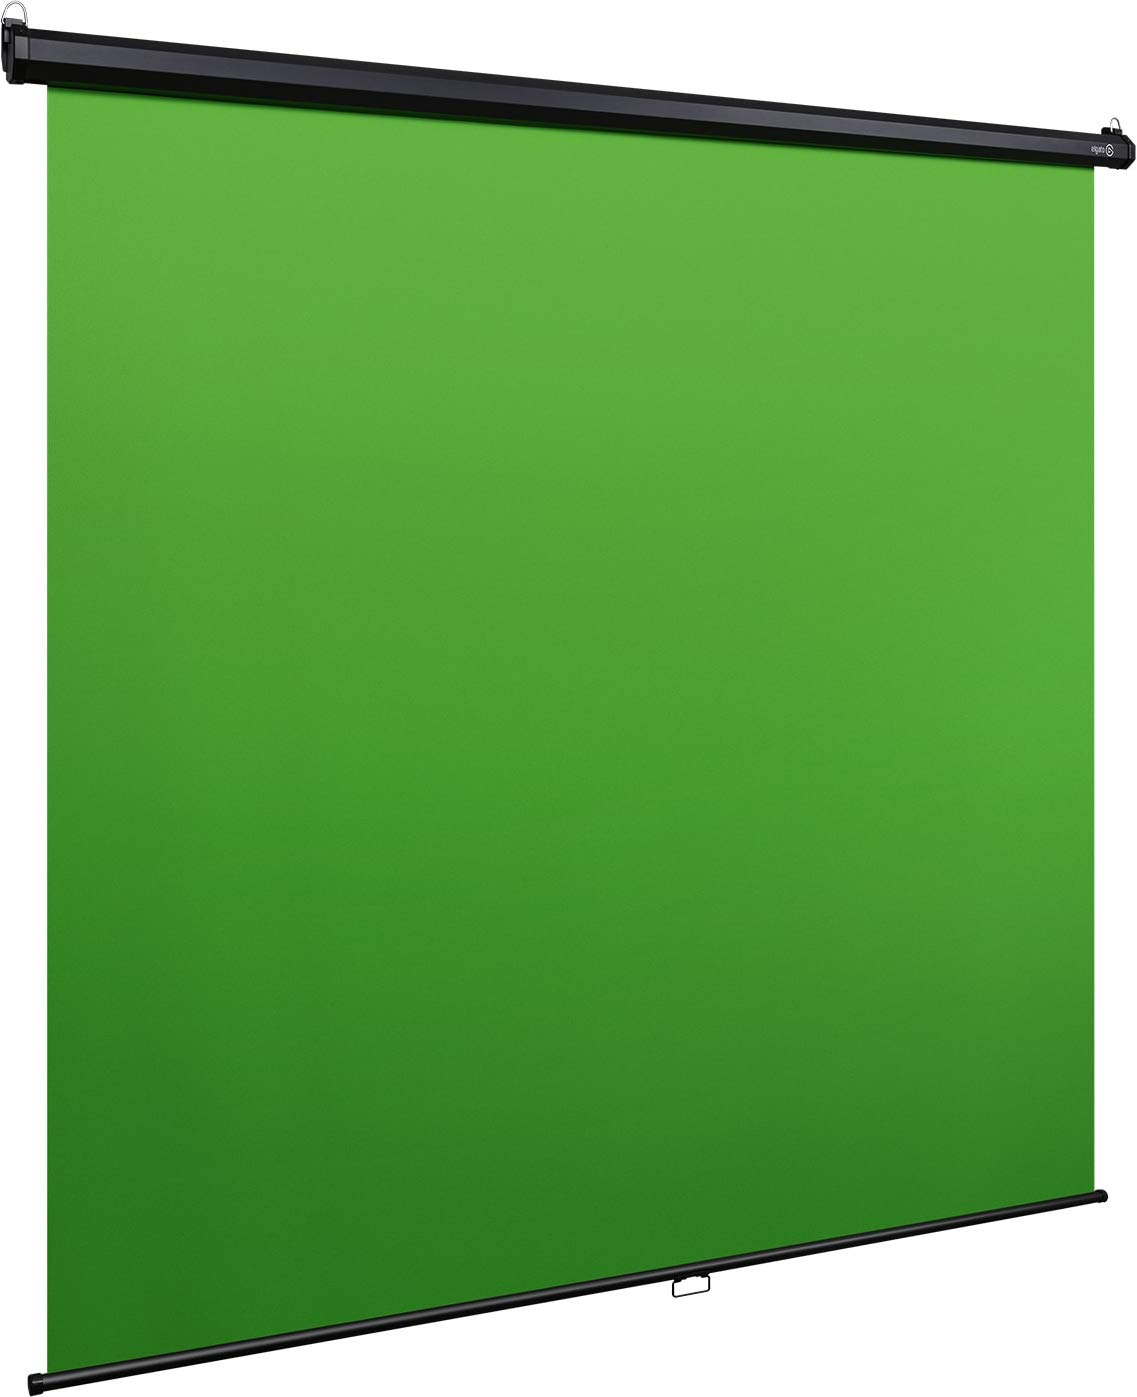 Đầu thu Elgato Green Screen MT là một sản phẩm tuyệt vời cho những người yêu thích chụp hình, quay phim. Khả năng gắn trên tường và thu gọn dễ dàng khi không sử dụng. Green Screen MT sẽ giúp câu chuyện của bạn trở nên sống động hơn bao giờ hết!